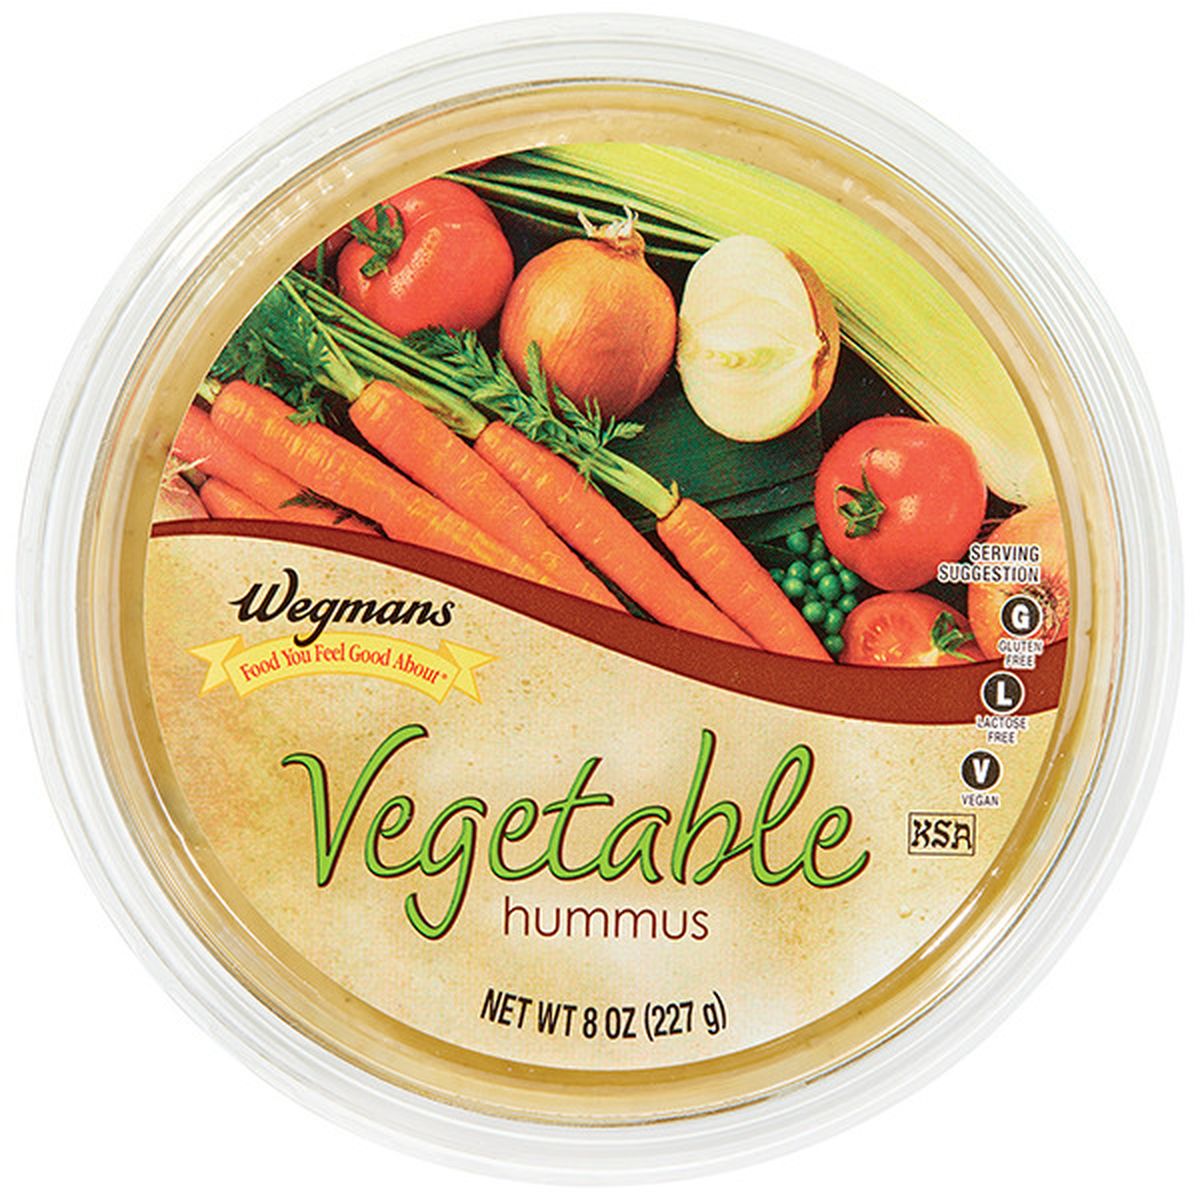 Calories in Wegmans Vegetable Hummus